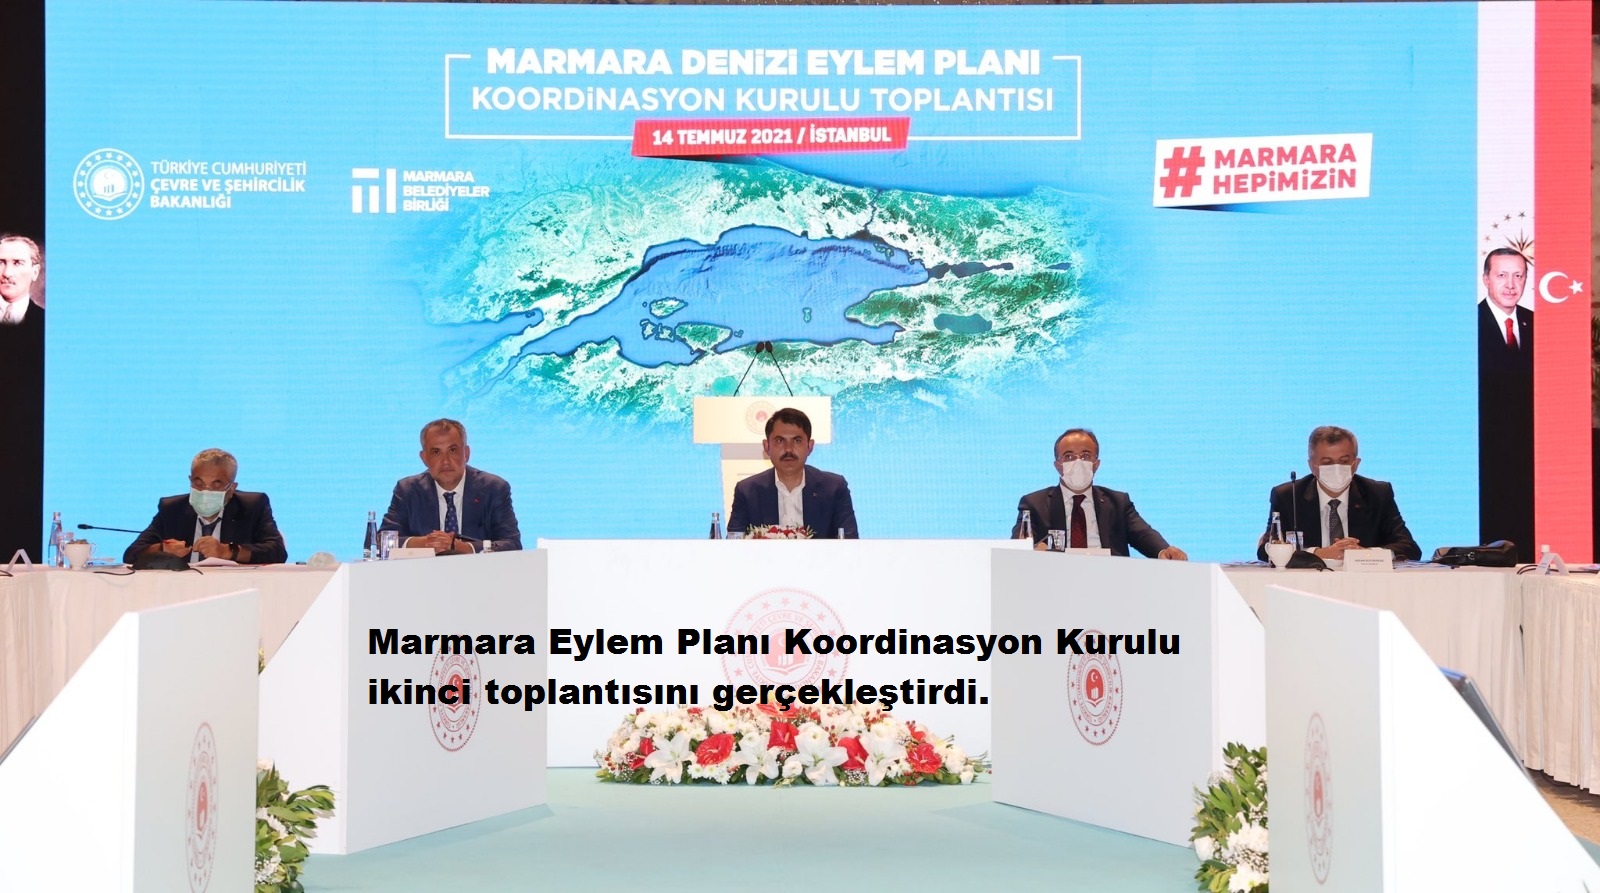 Marmara Eylem Planı Koordinasyon Kurulu 2. Toplantısını gerçekleştirdi.